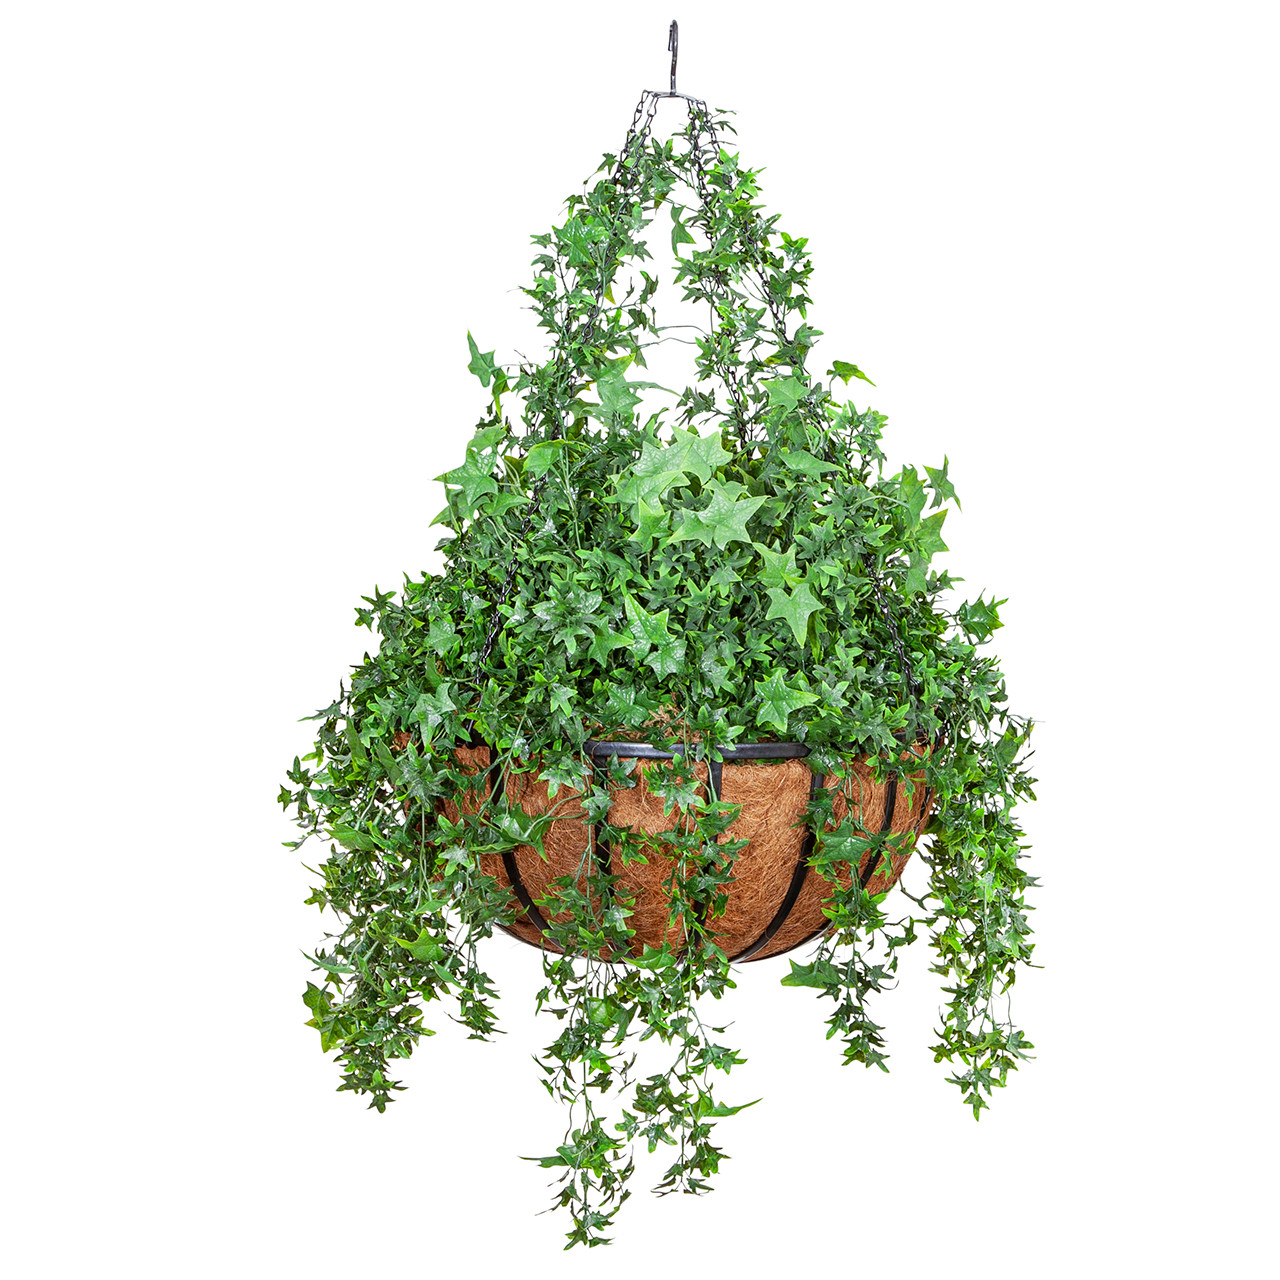 Ivy Hanging Vines | Mounted Print